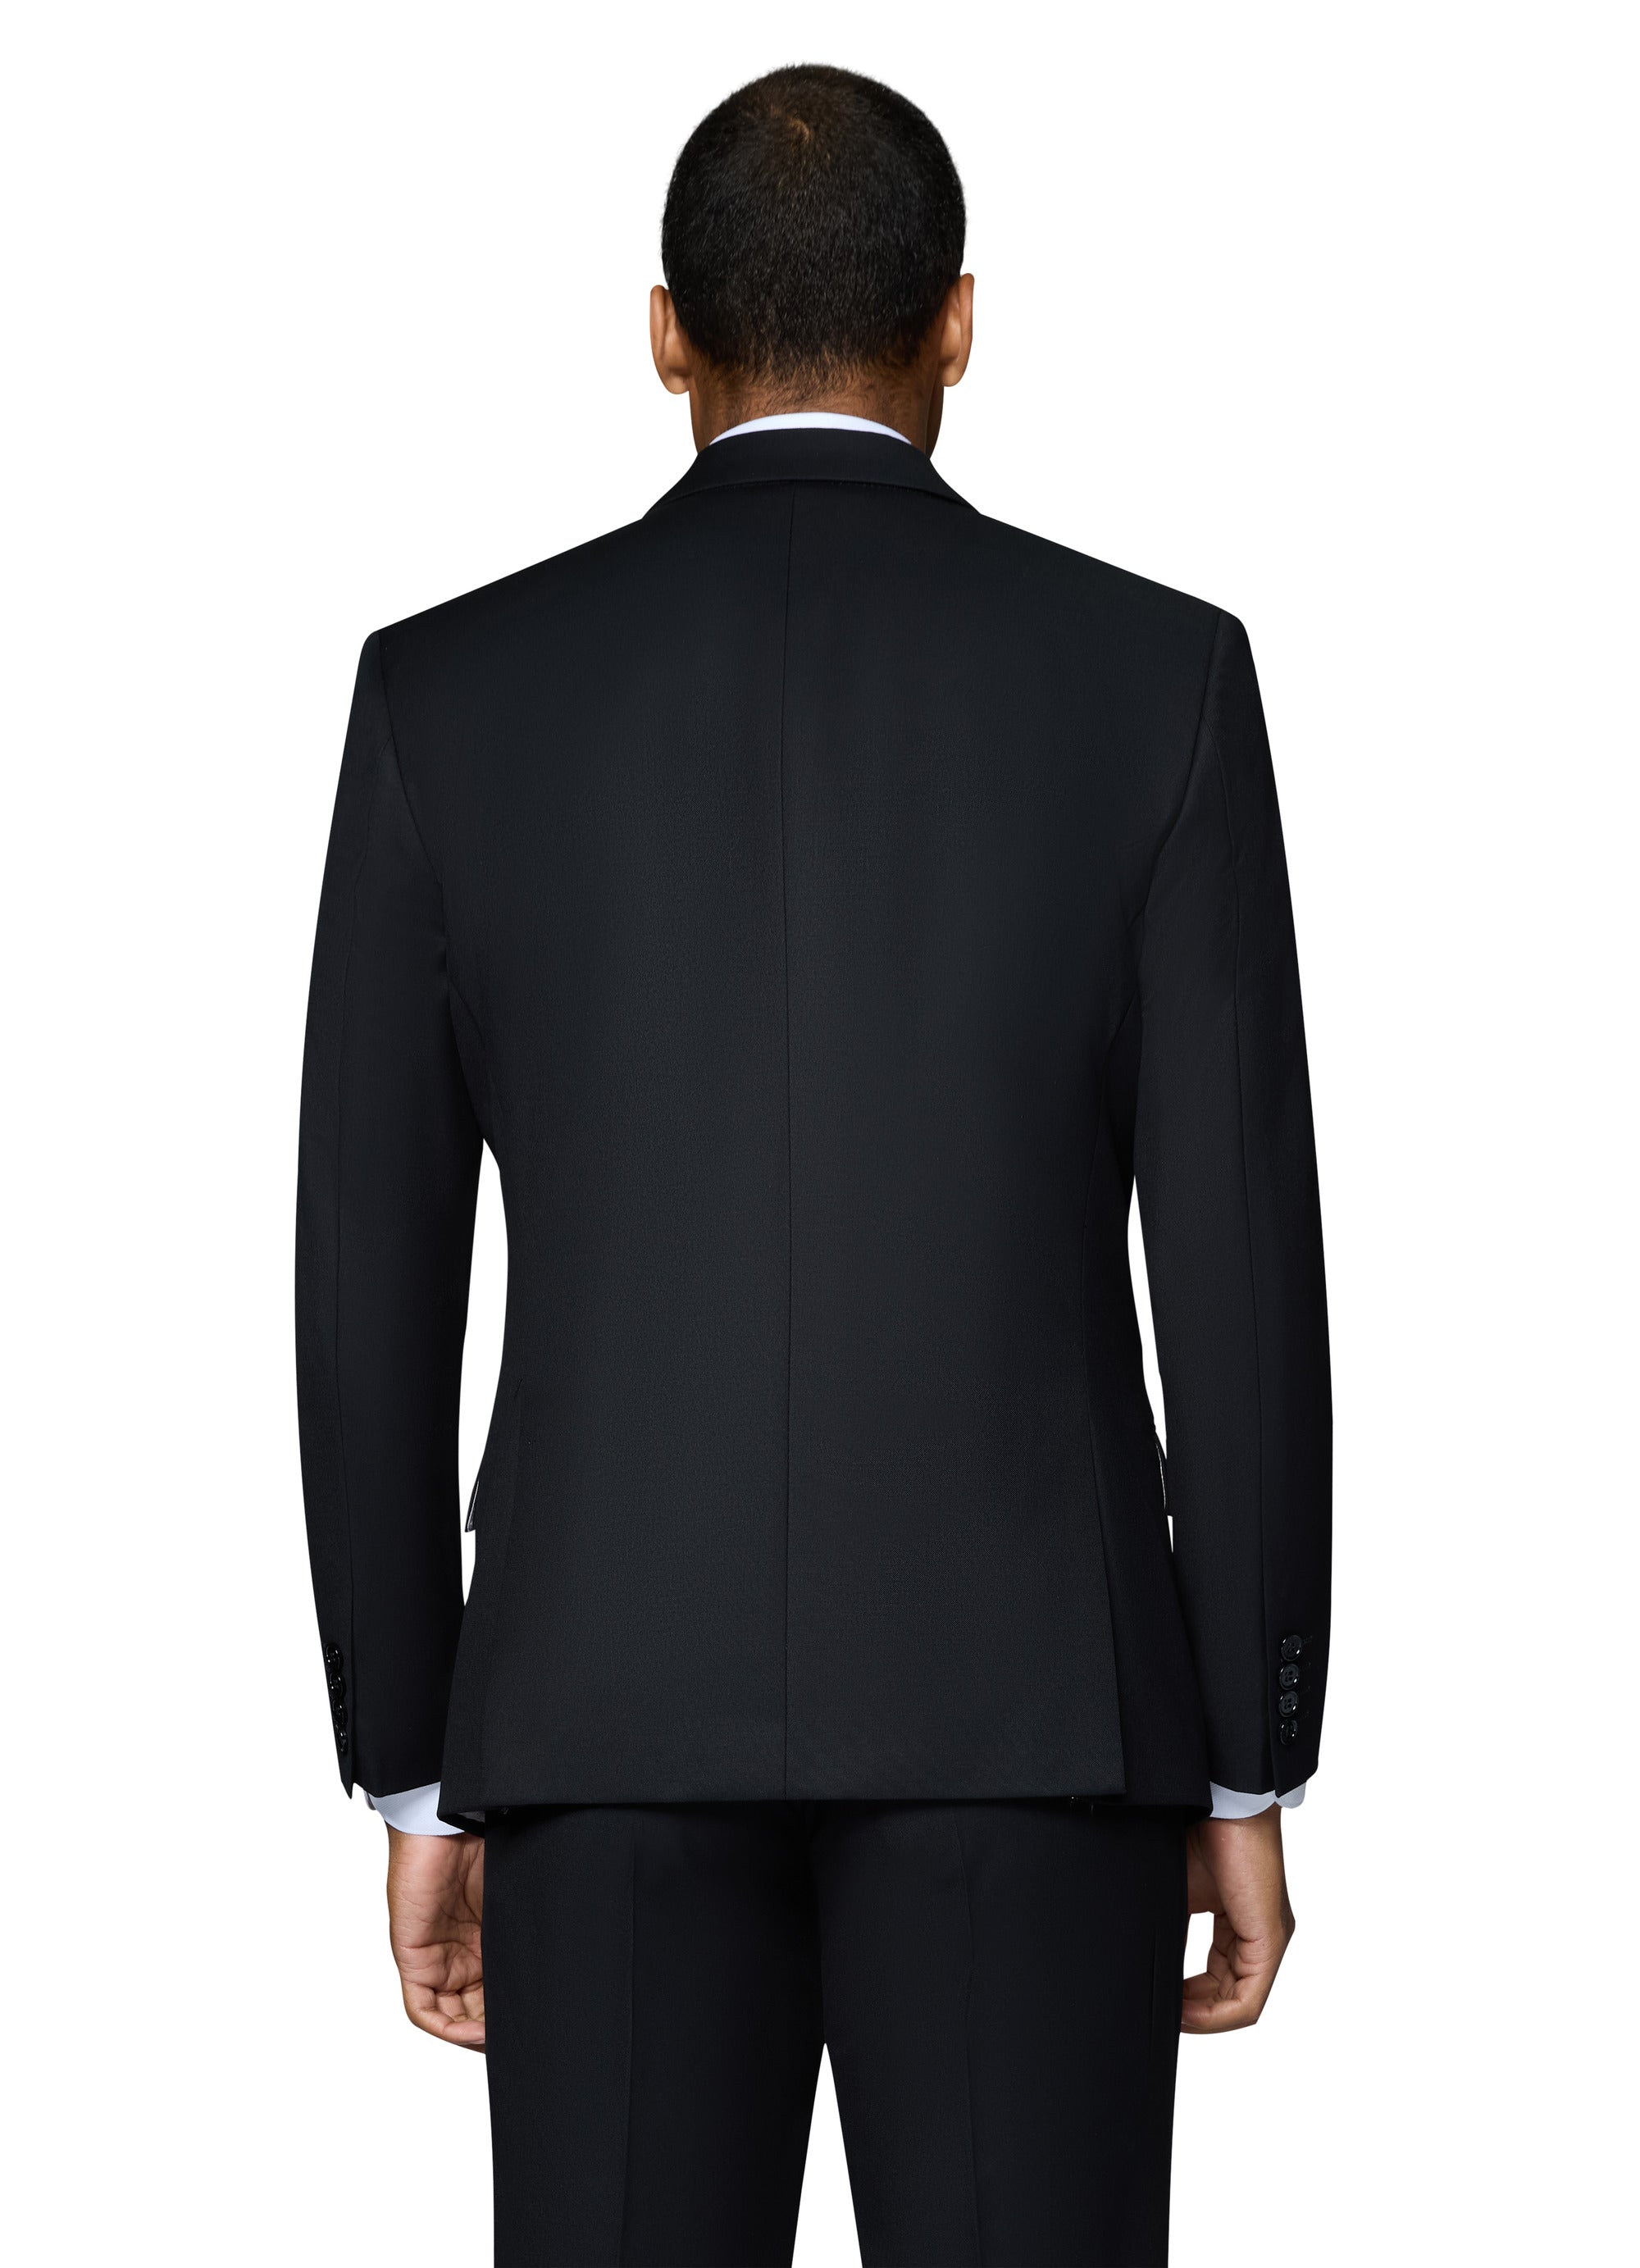 Berragamo Vested Solid Black Modern Fit